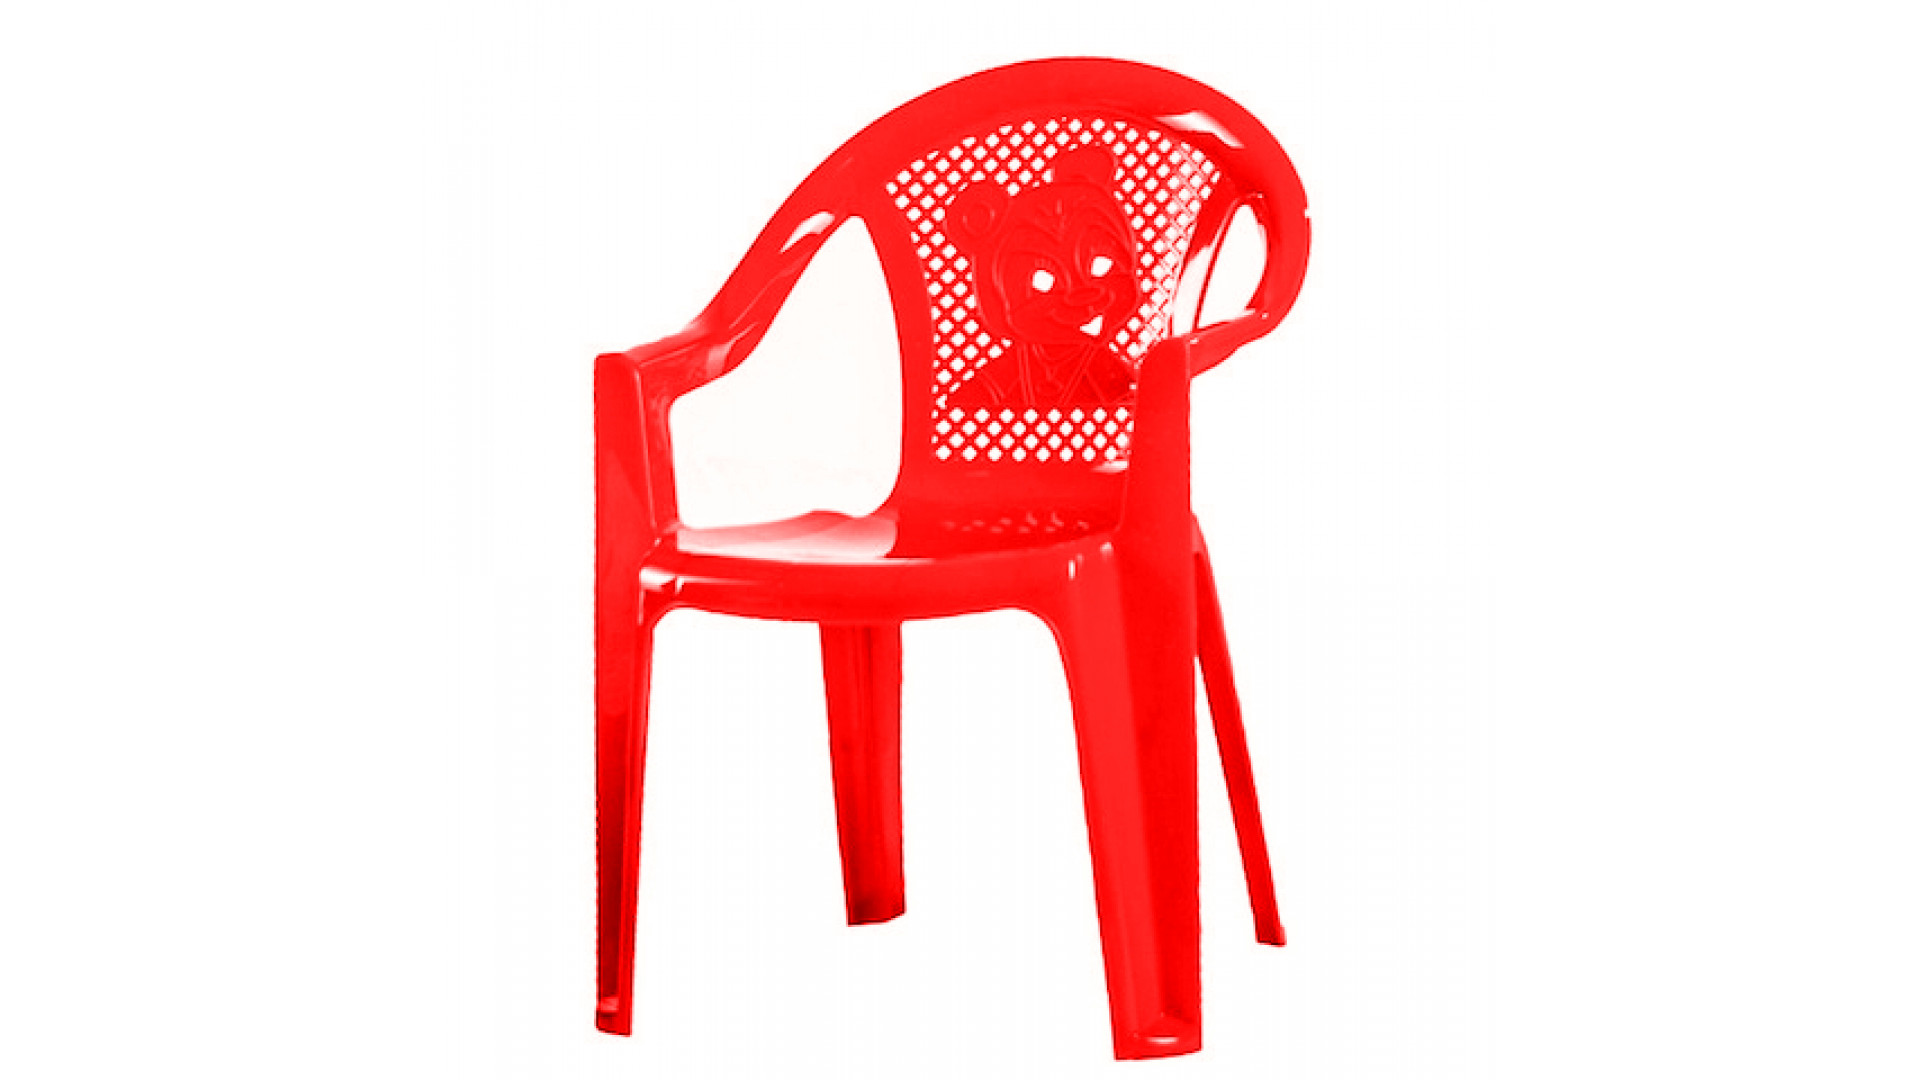 стулья пластиковые для отдыха